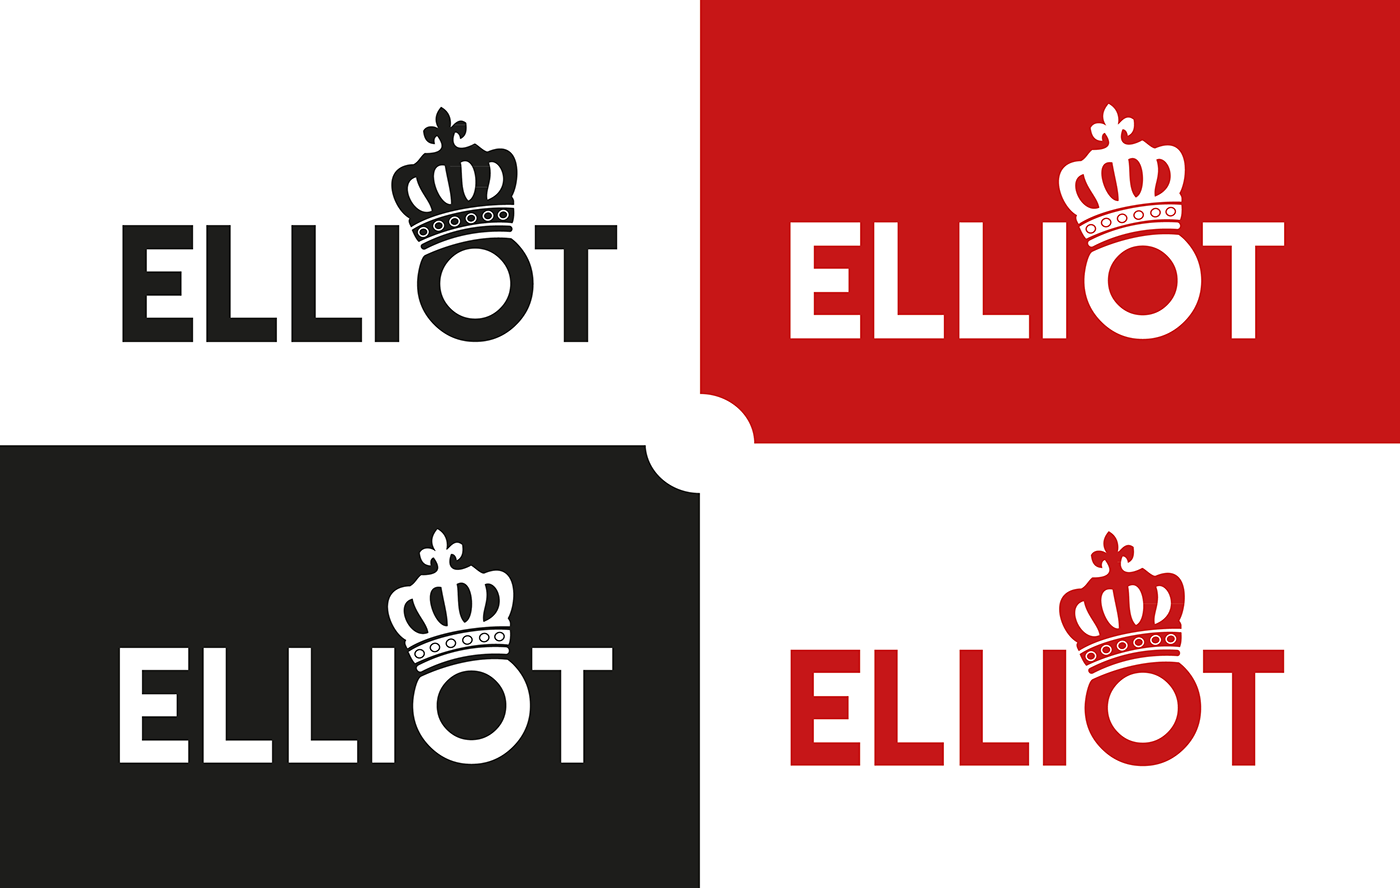 Elliot Logo - Elliot (logo design) on Behance